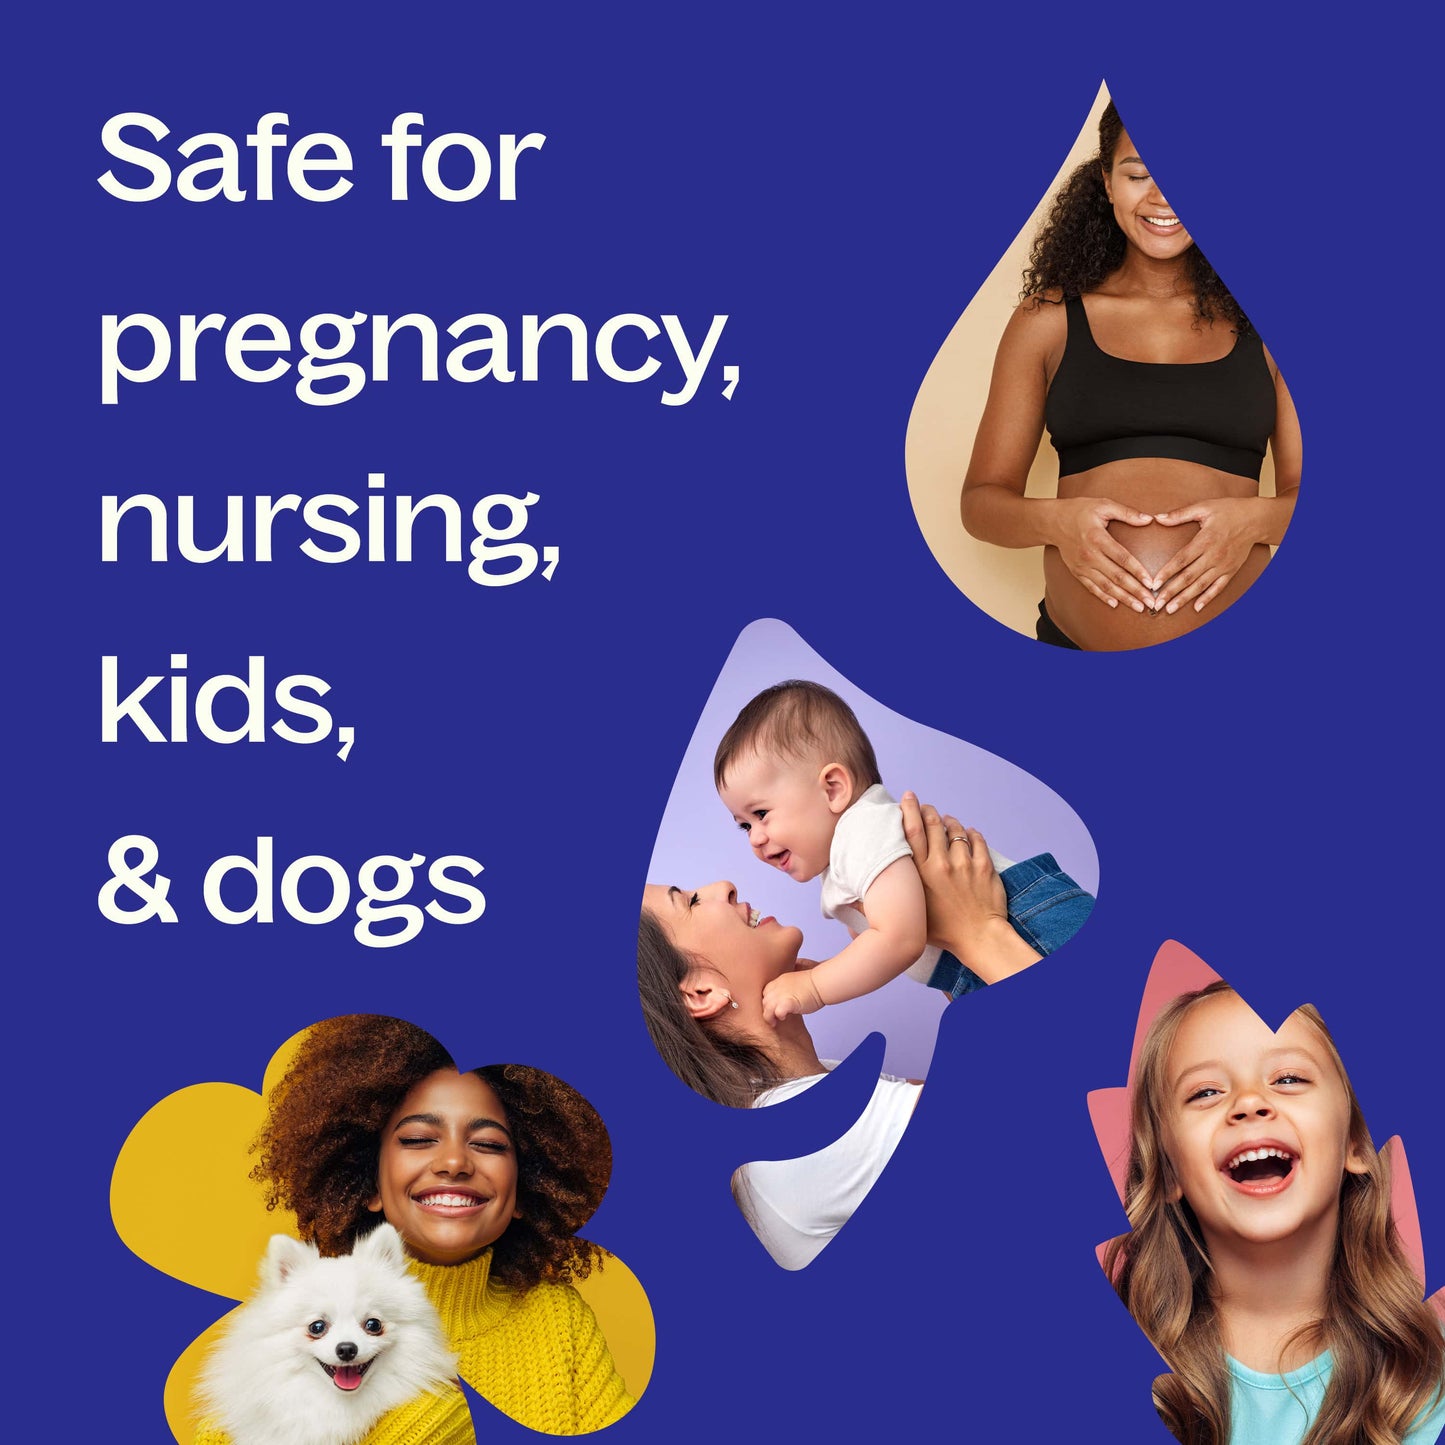 safe for pregnancy, nursing, kids and dogs